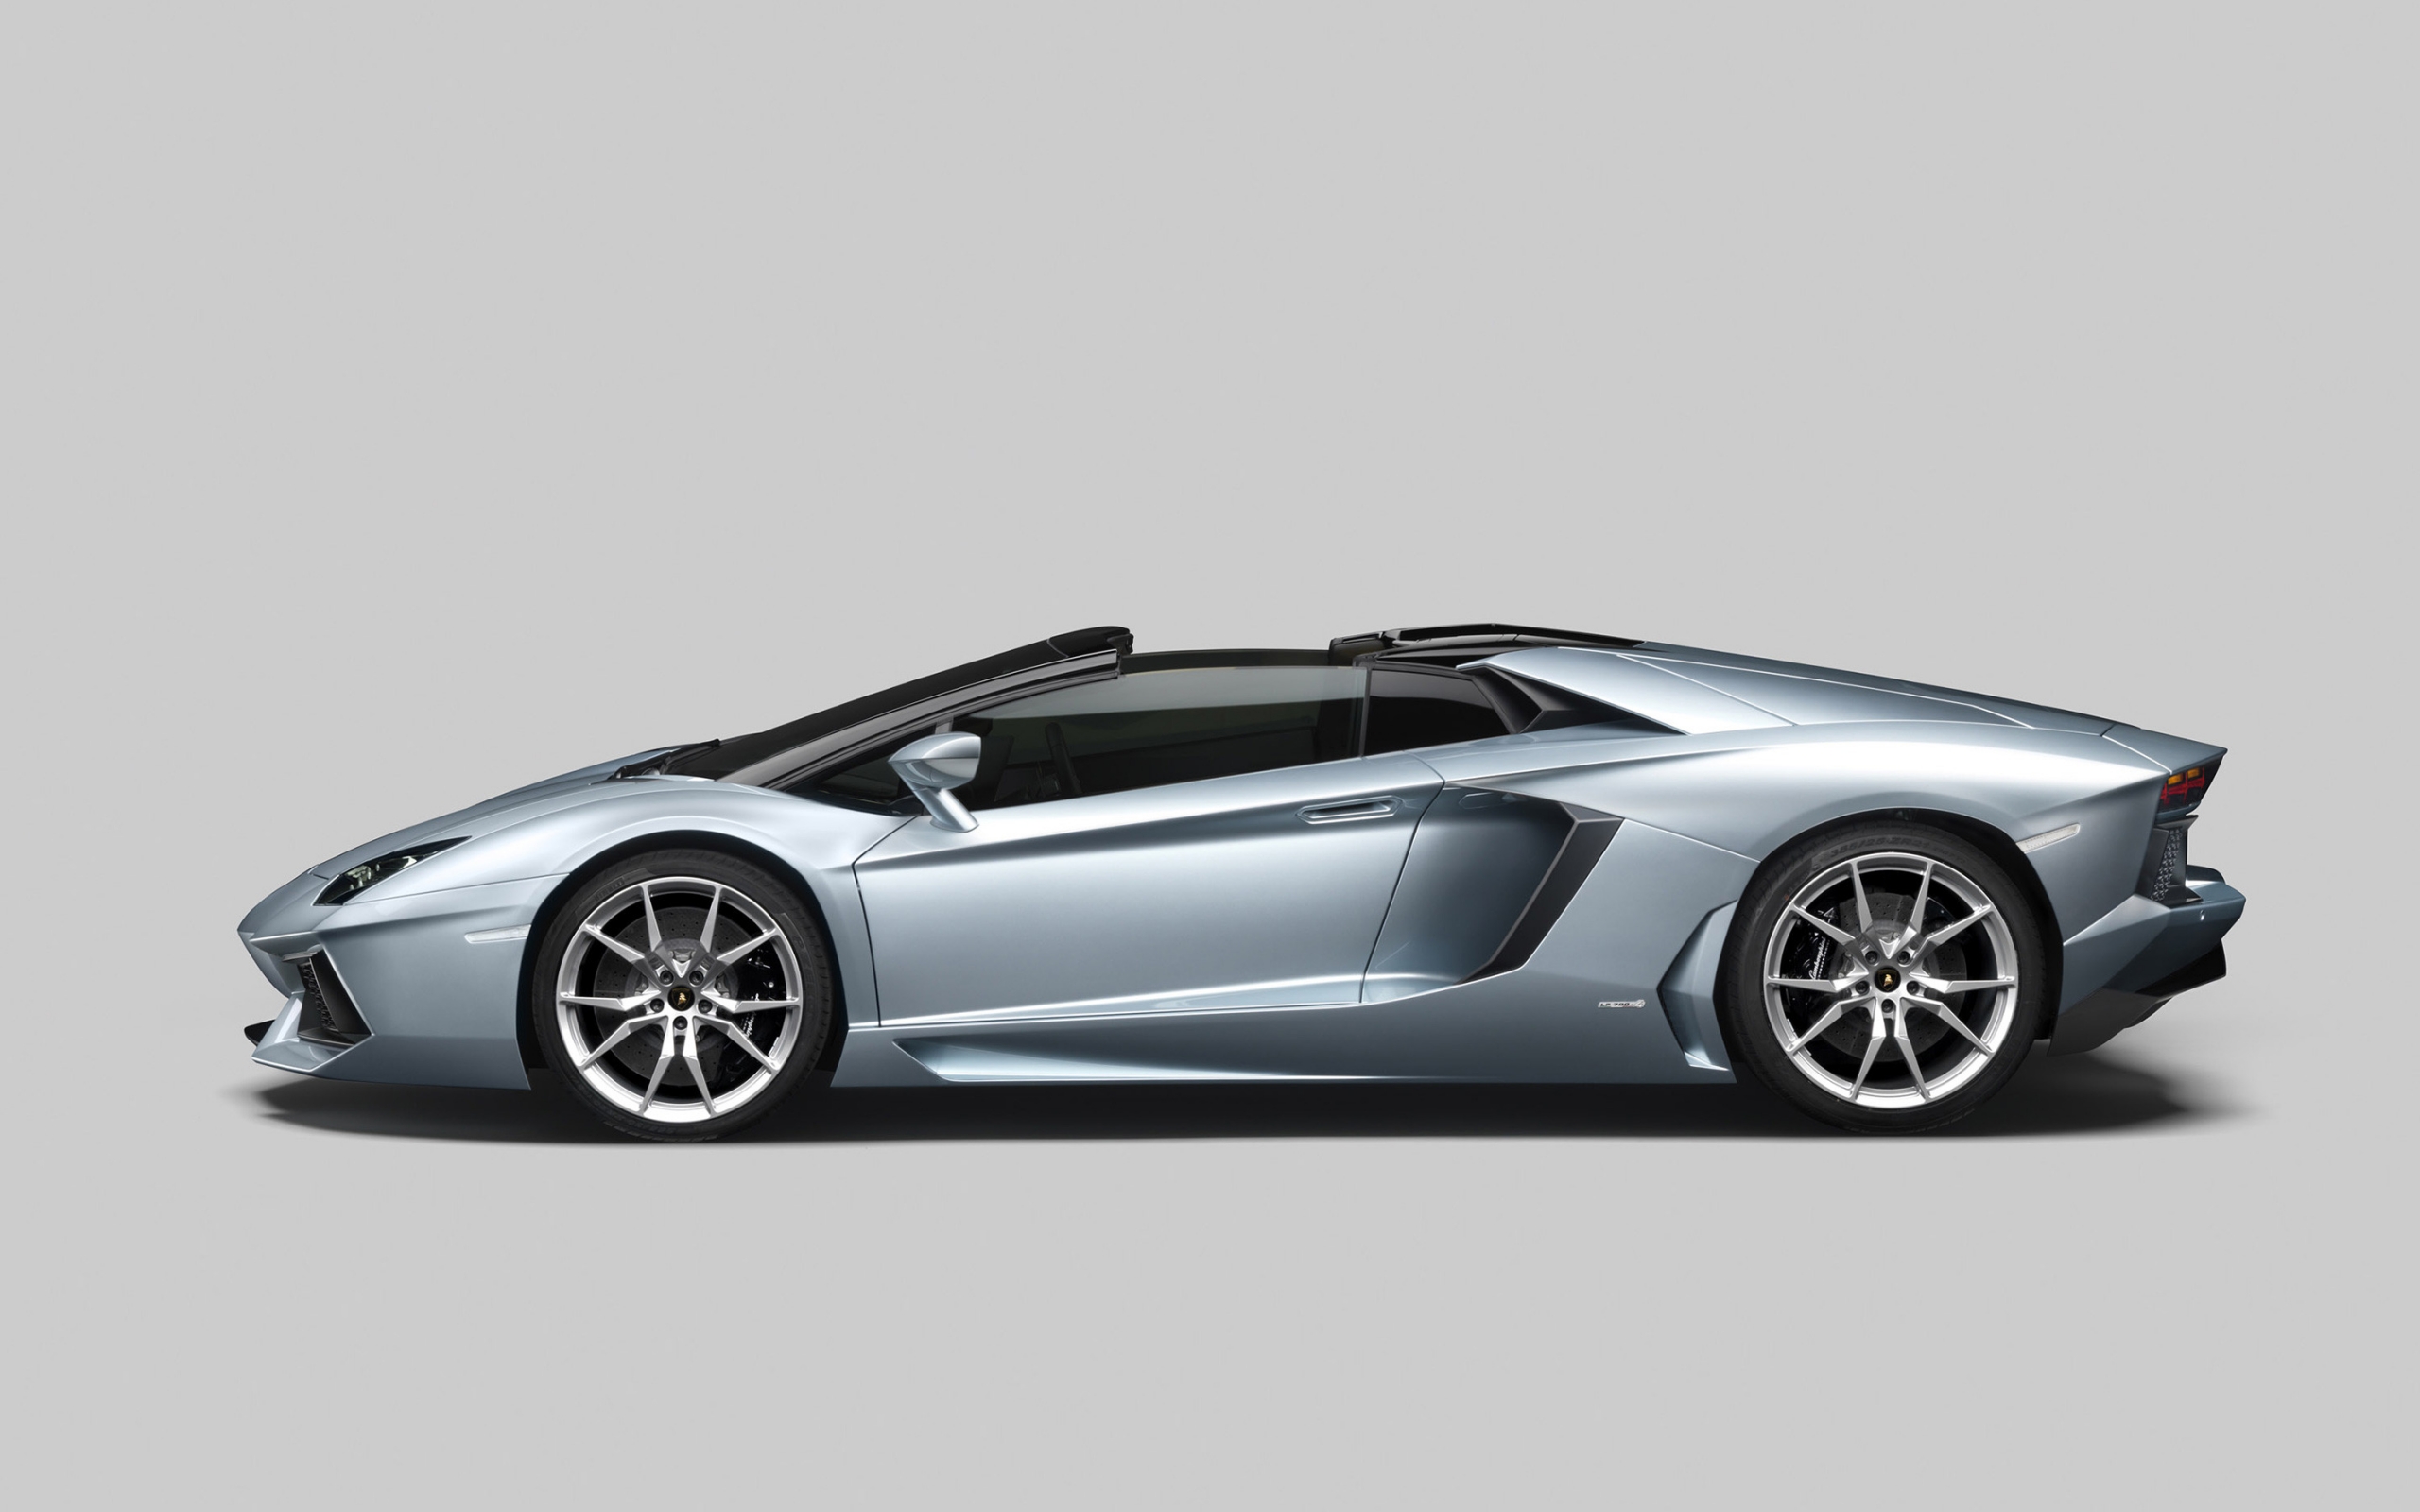 Lamborghini Aventador LP 700 for 2560 x 1600 widescreen resolution